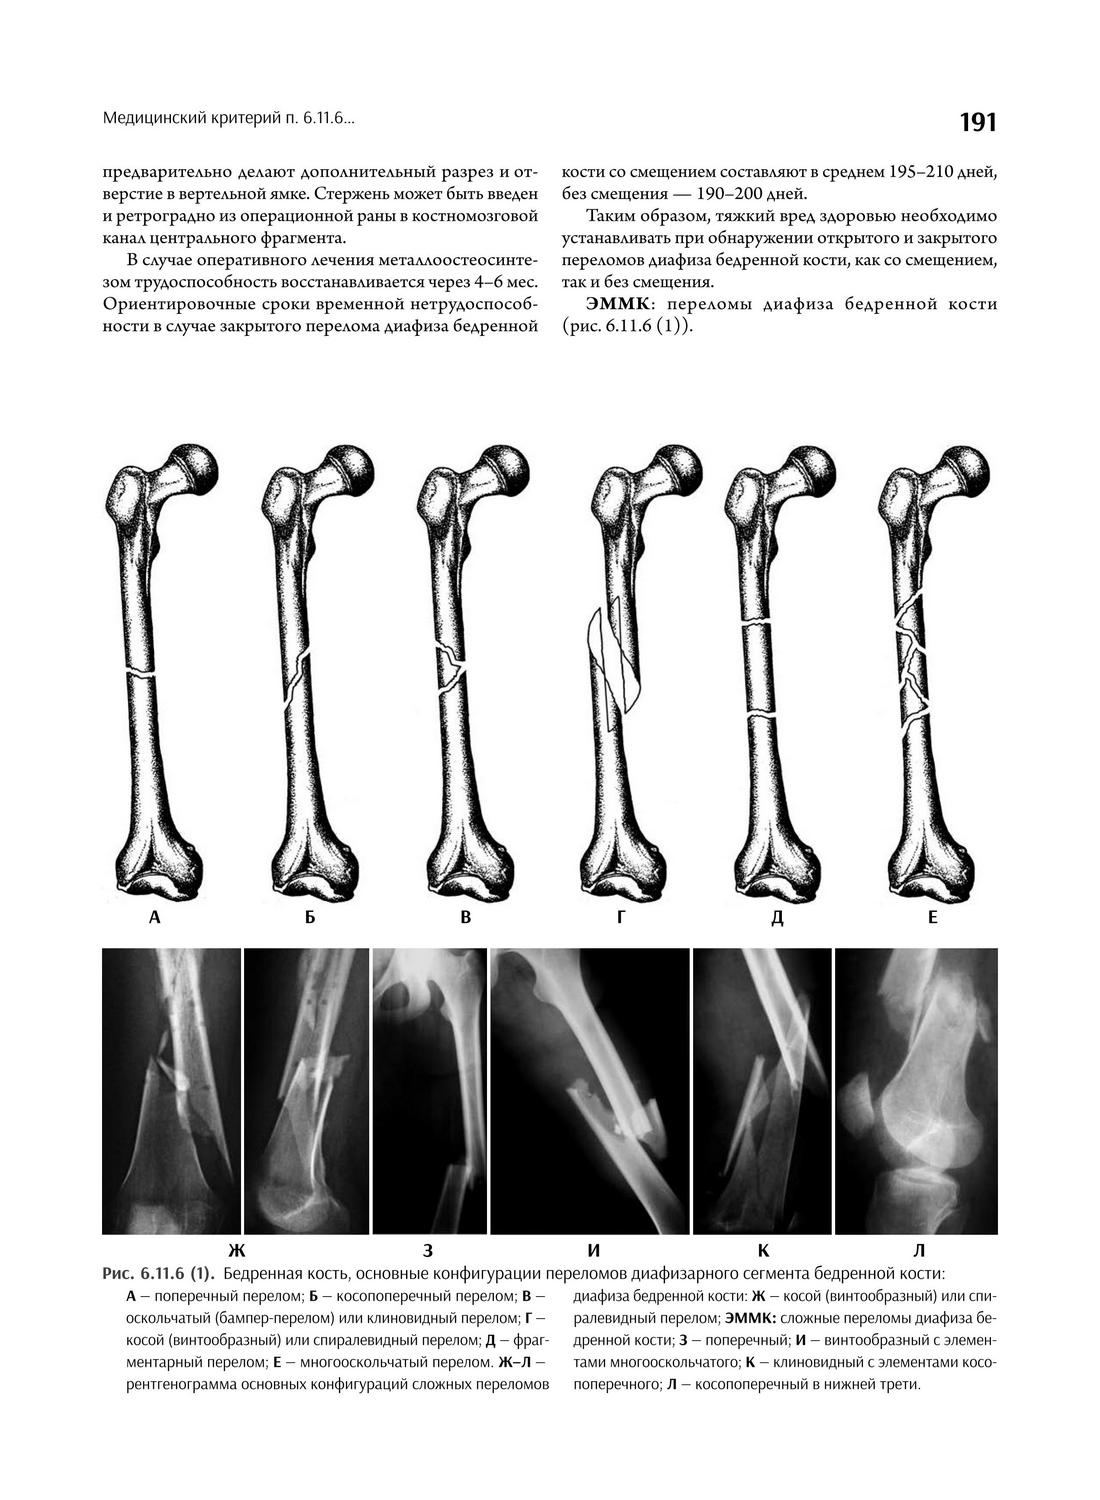 Бедренная кость, основные конфигурации переломов диафизарного сегмента бедренной кости